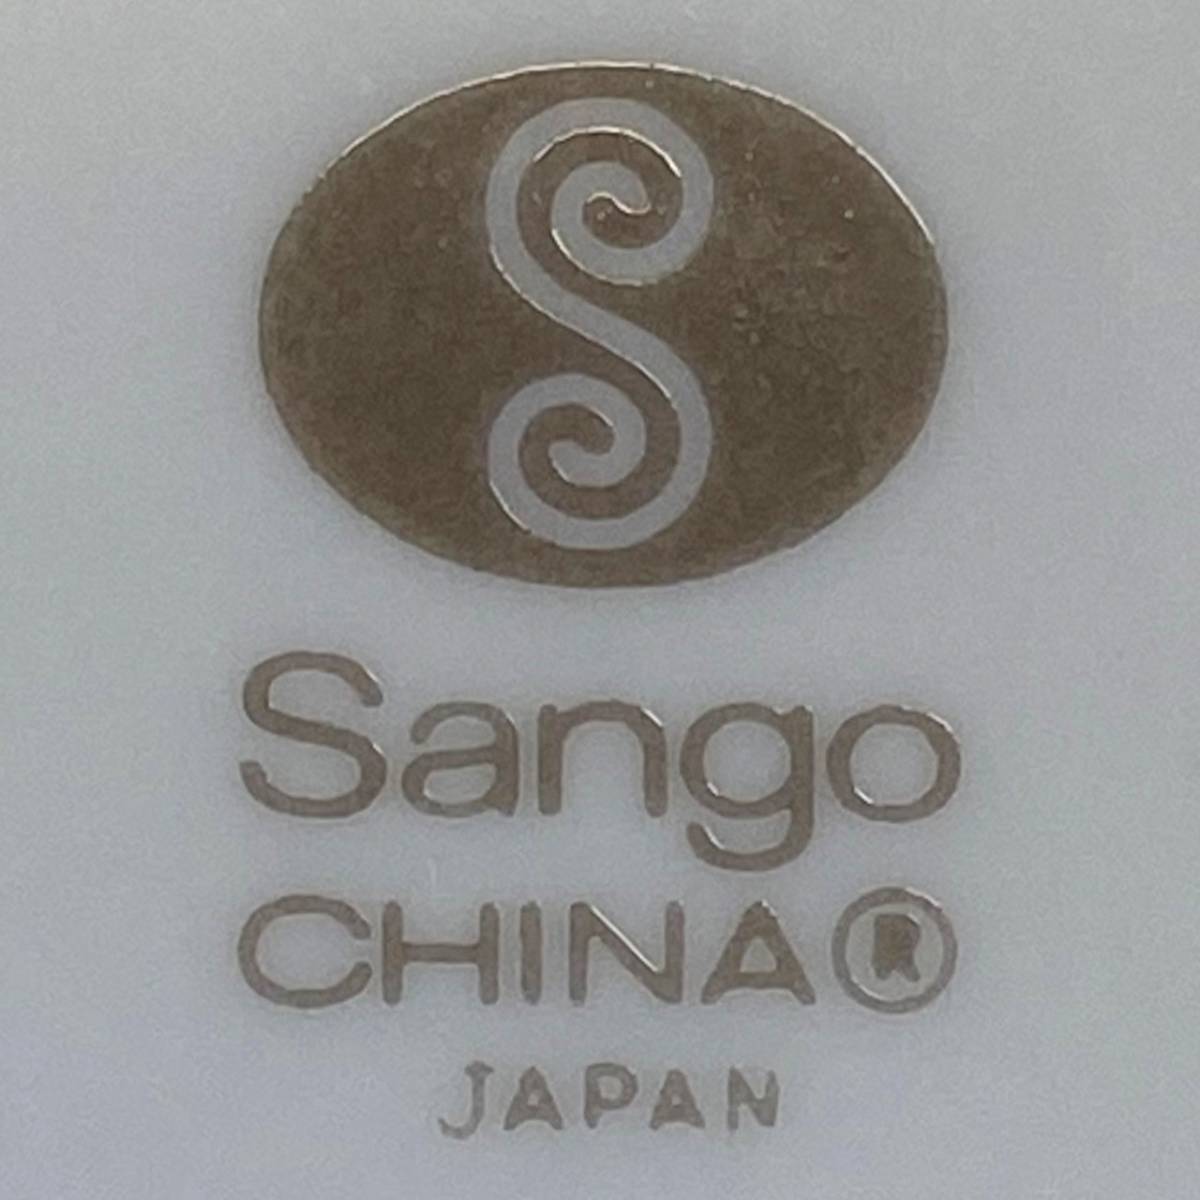 Sango 三郷陶器 中華食器セット 大量17点の画像6